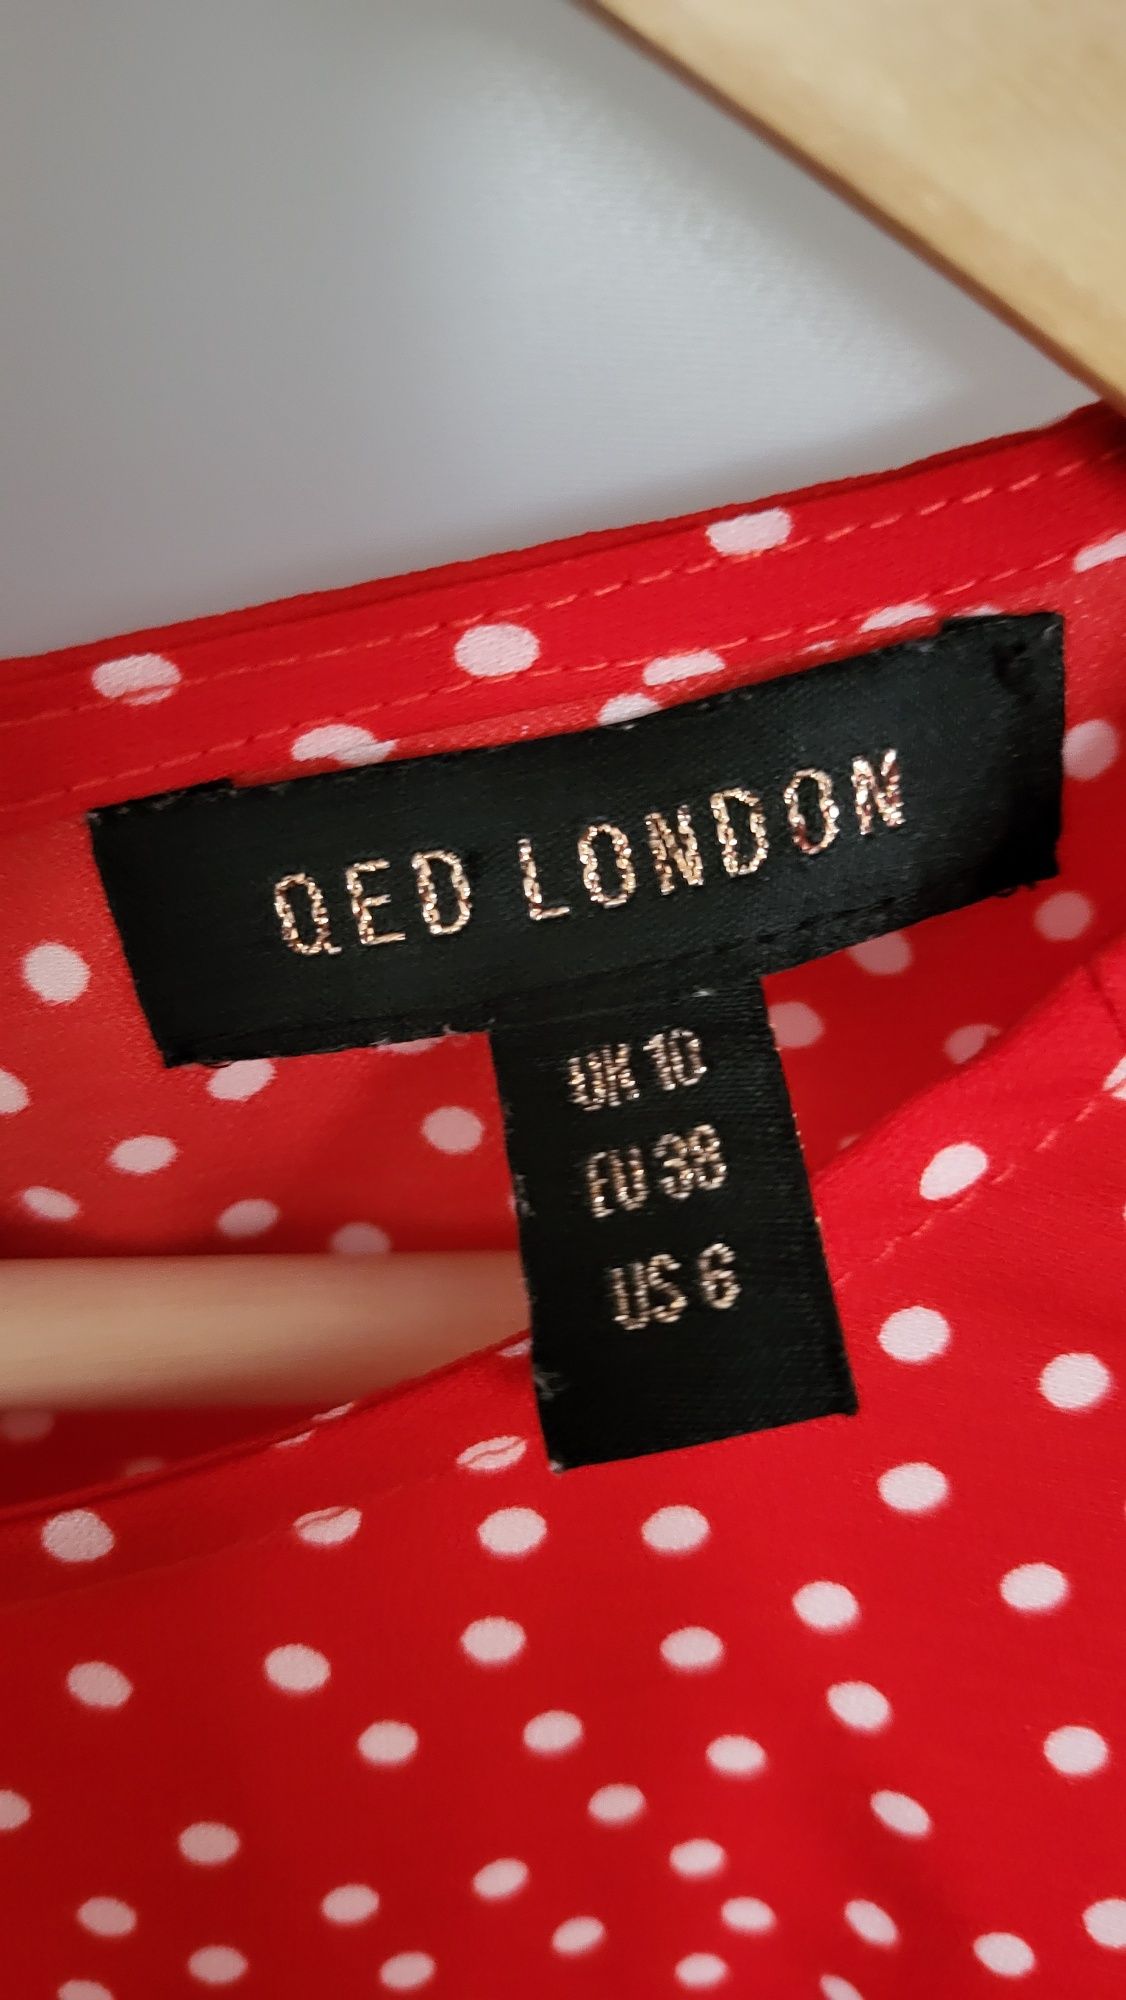 Bluzka w kropki QED LONDON, 38